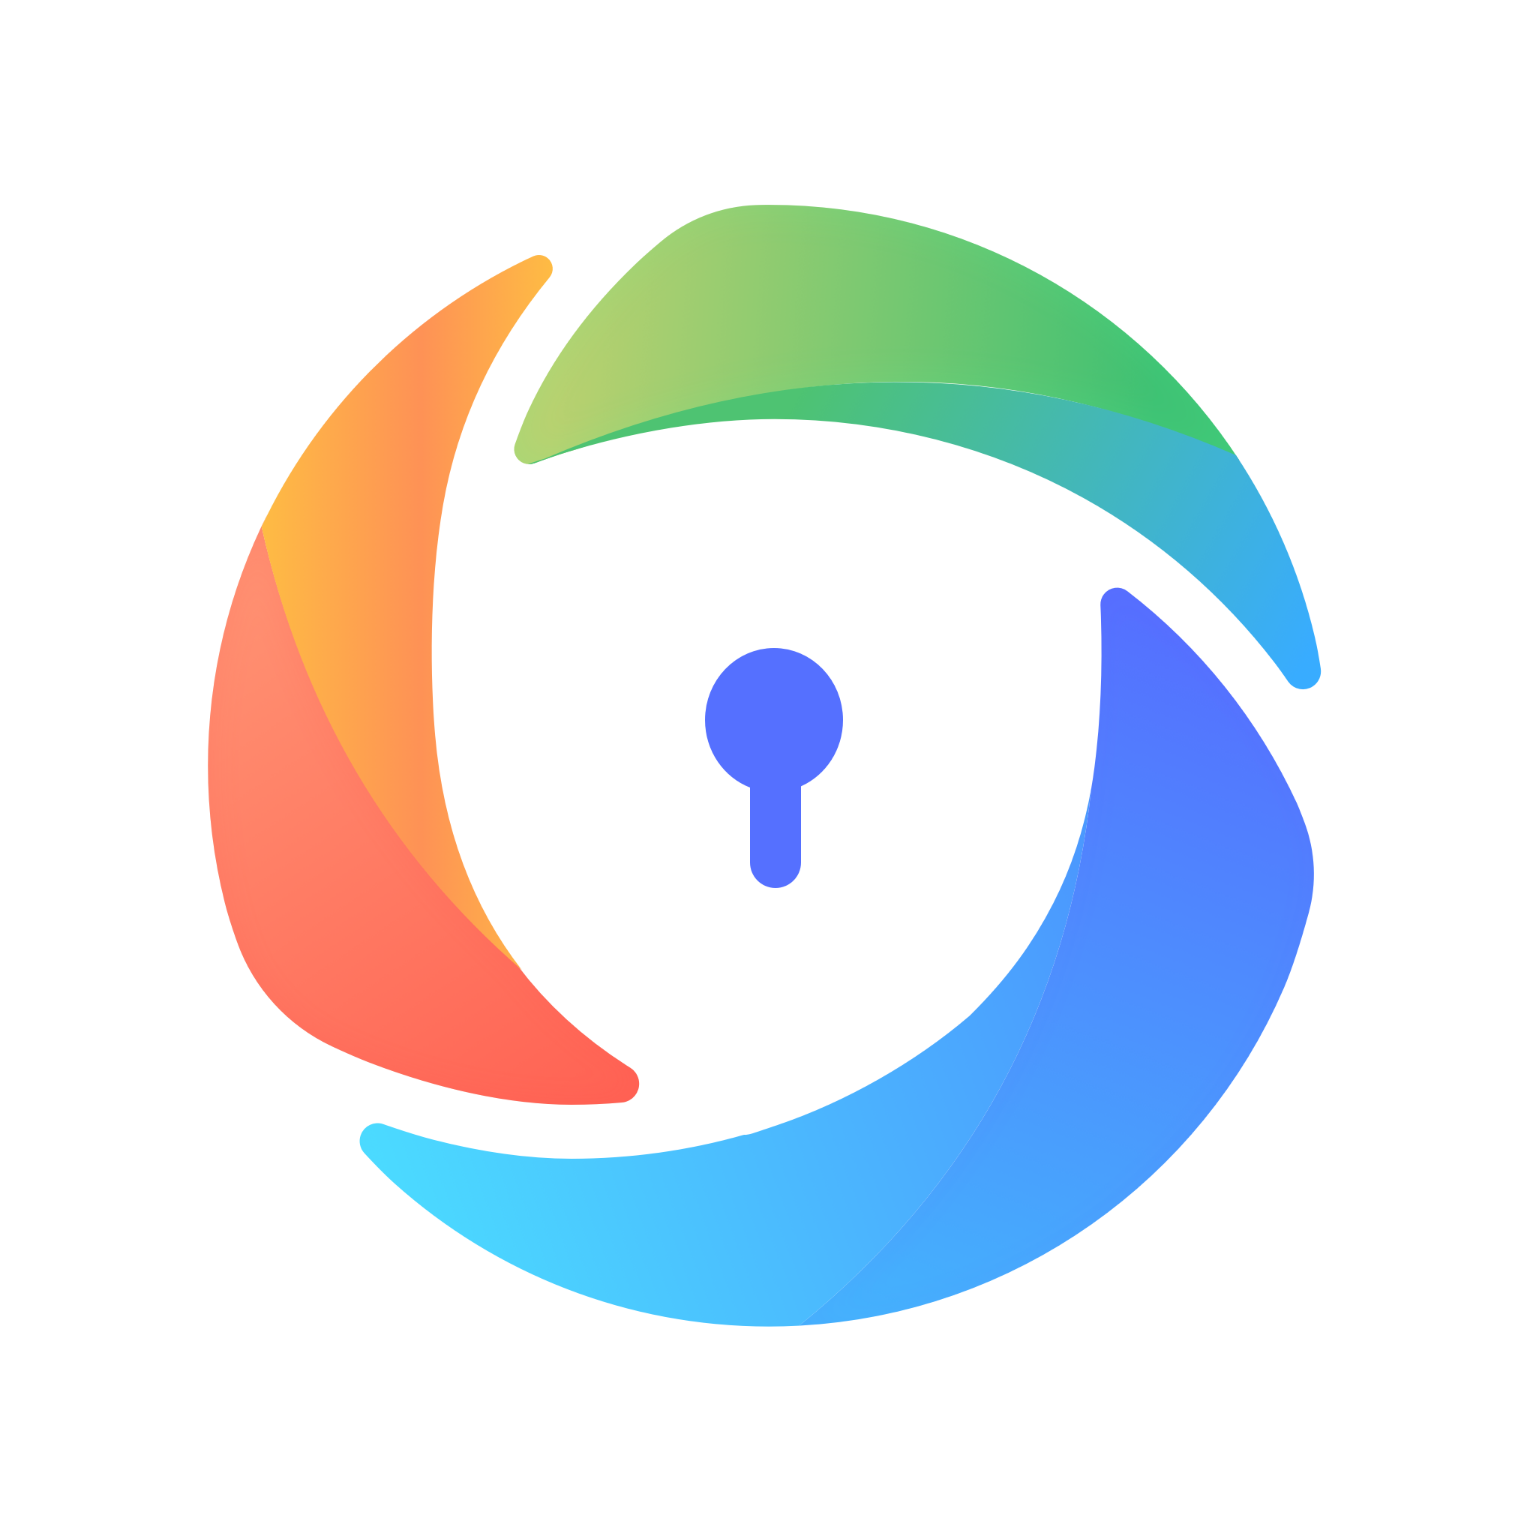 私密相册加密助手app下载,私密相册加密助手app软件 v1.0.0 - 浏览器家园